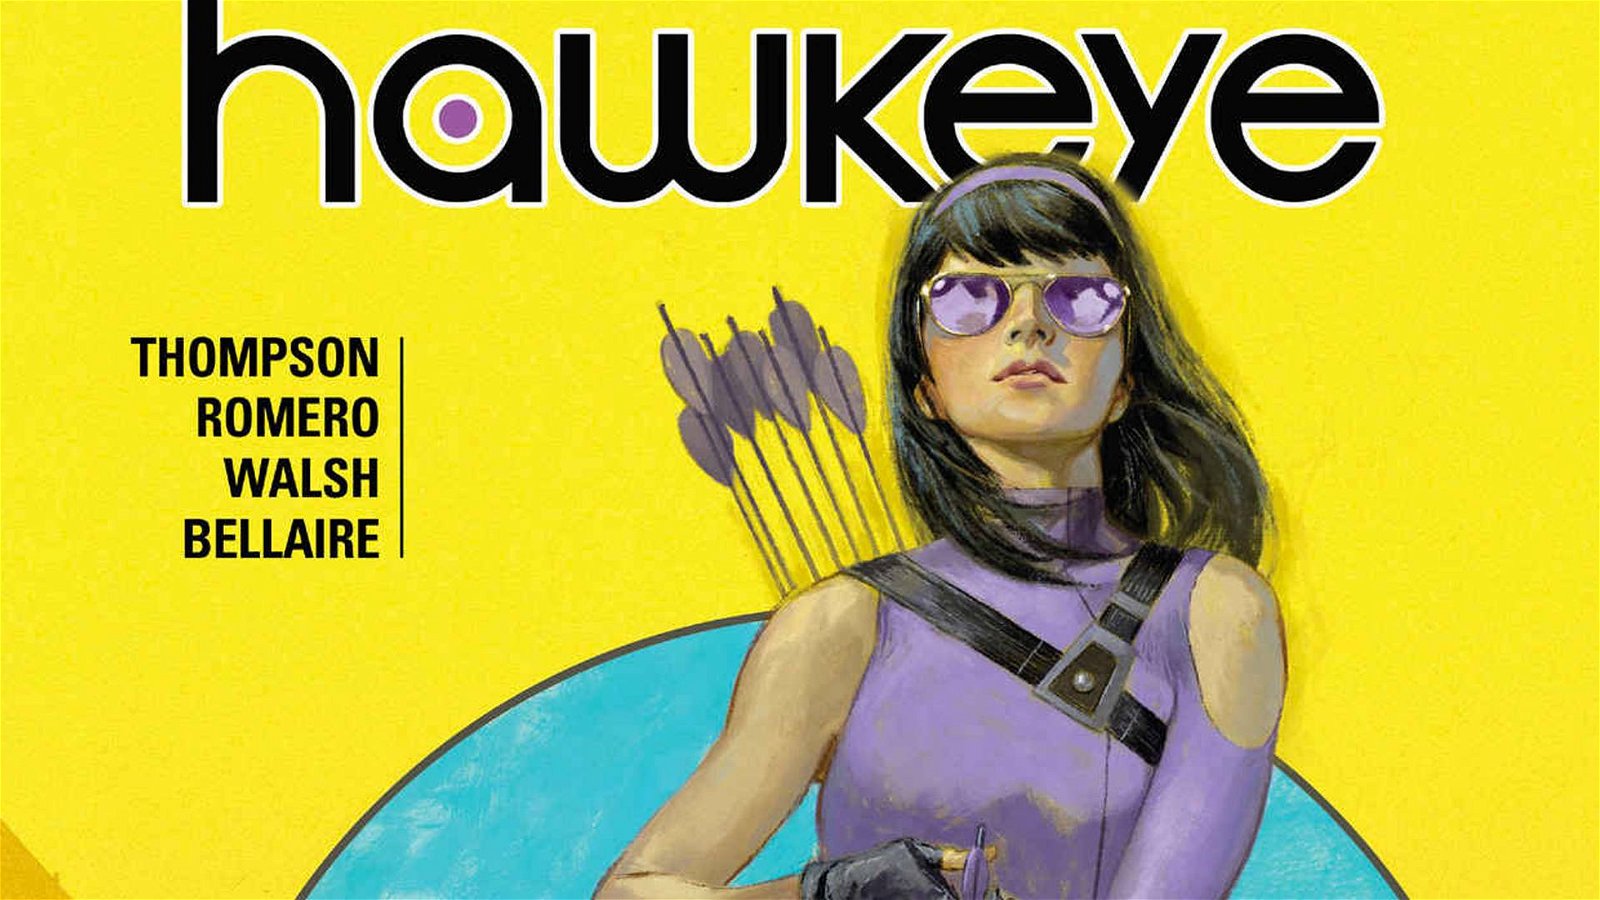 Immagine di Hawkeye: annunciato il titolo provvisorio della nuova serie TV Marvel